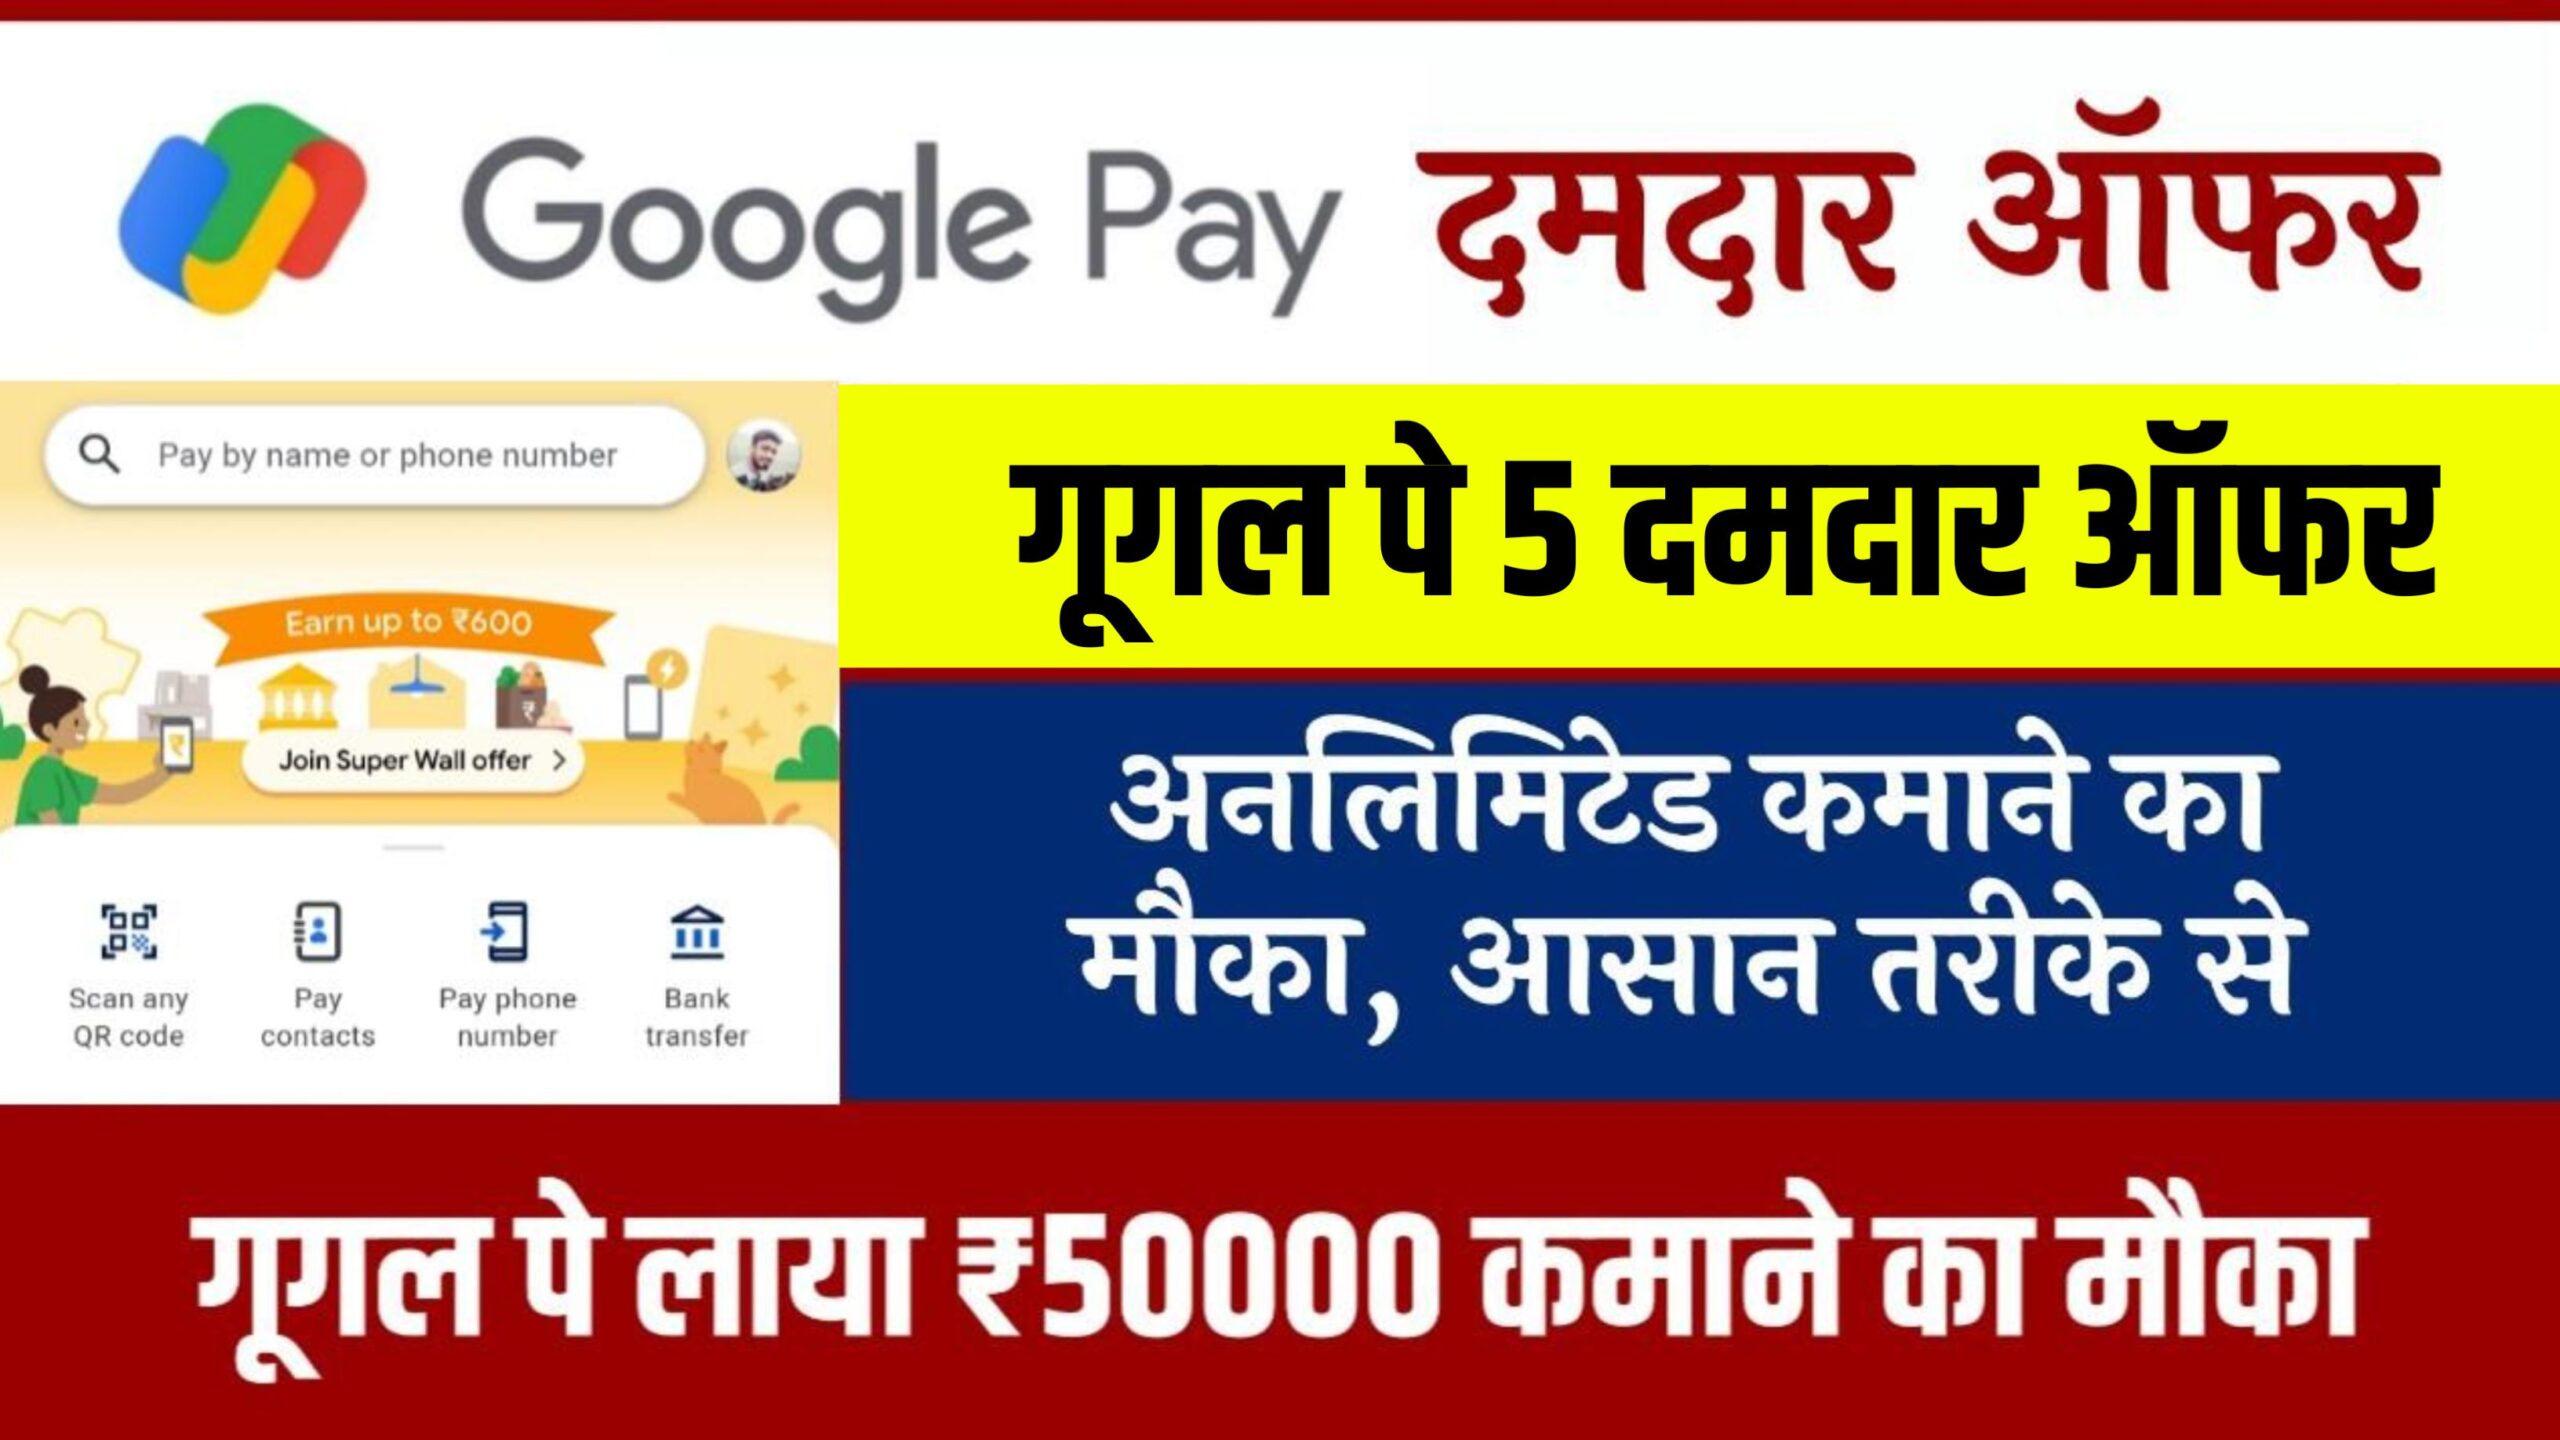 Google Pay Per day 1k se 2k money Earn: